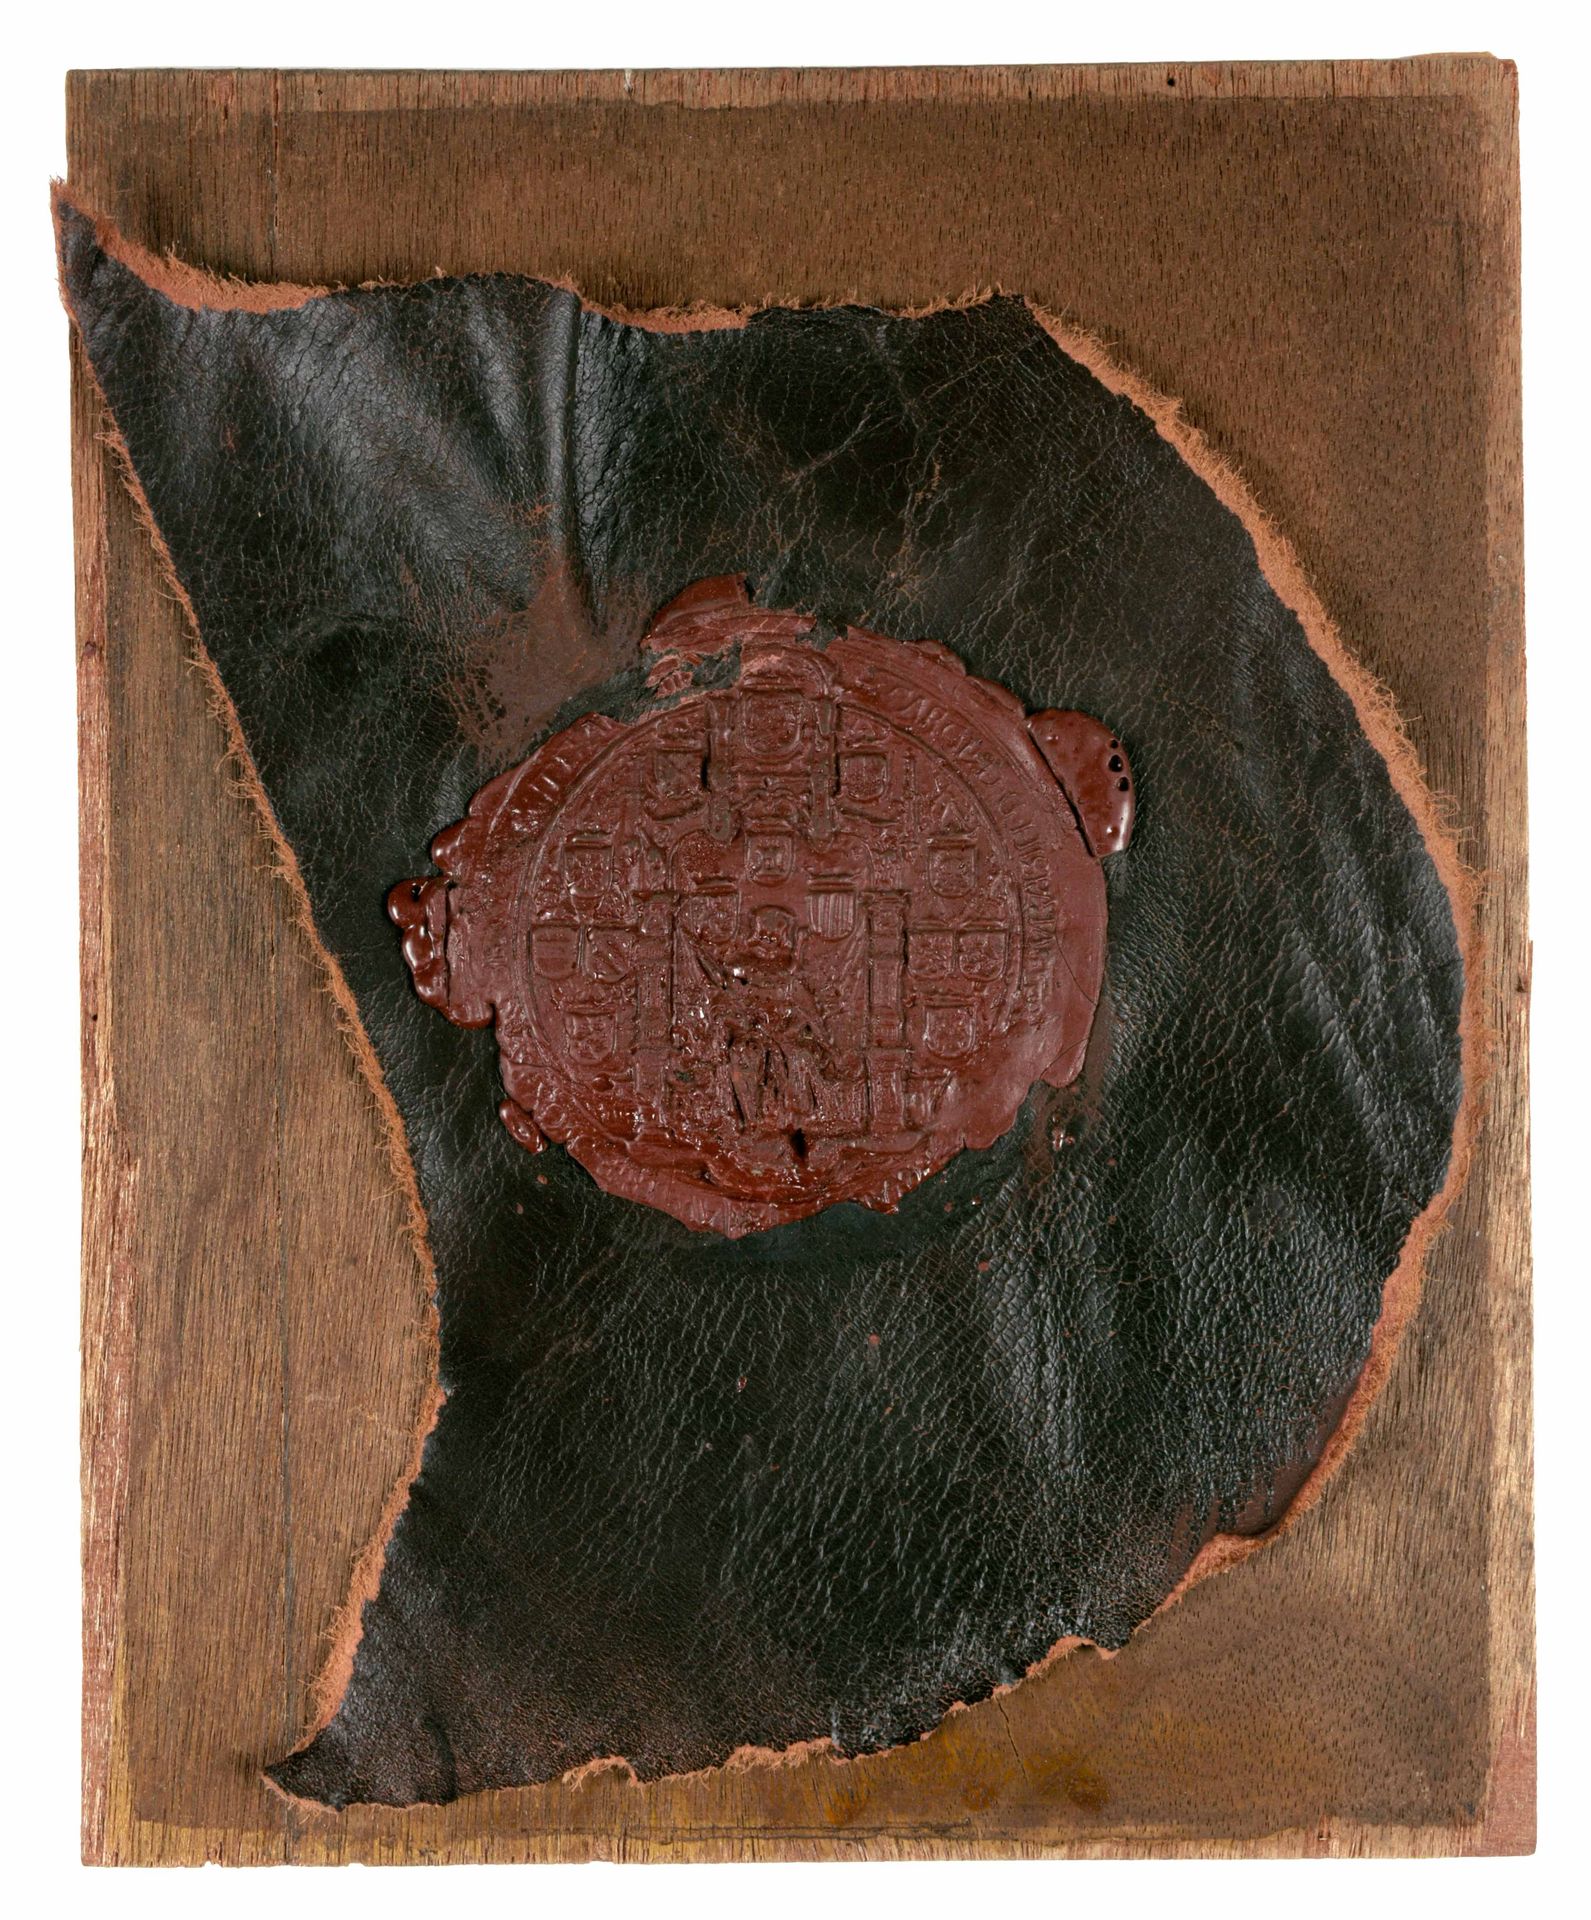 [CHARLES V] Gran sello del emperador Carlos V

Sello de cera roja, sobre cuero, &hellip;